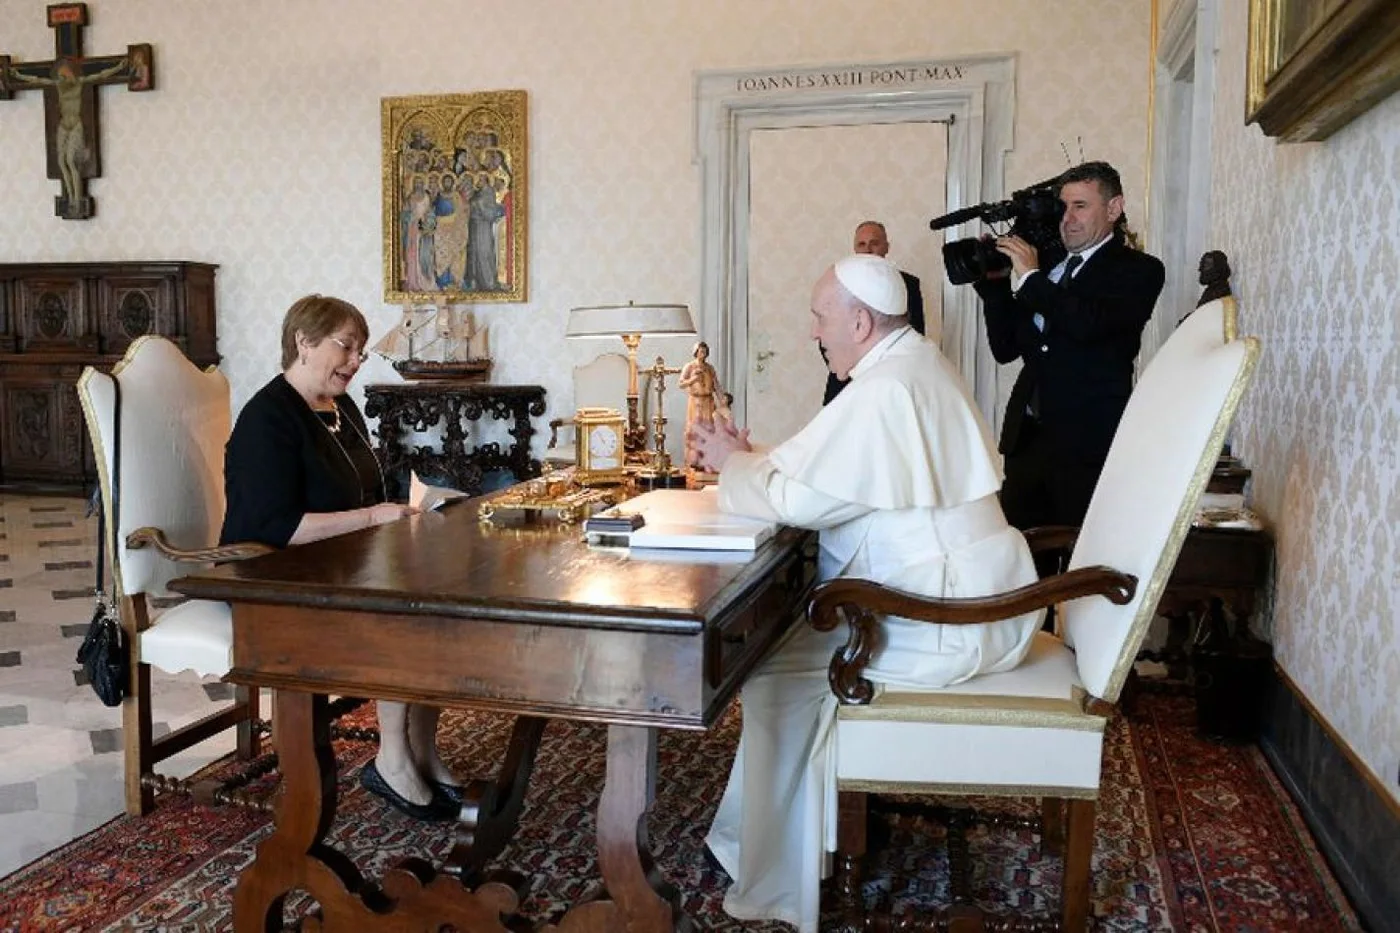 El papa Francisco recibió a Bachelet